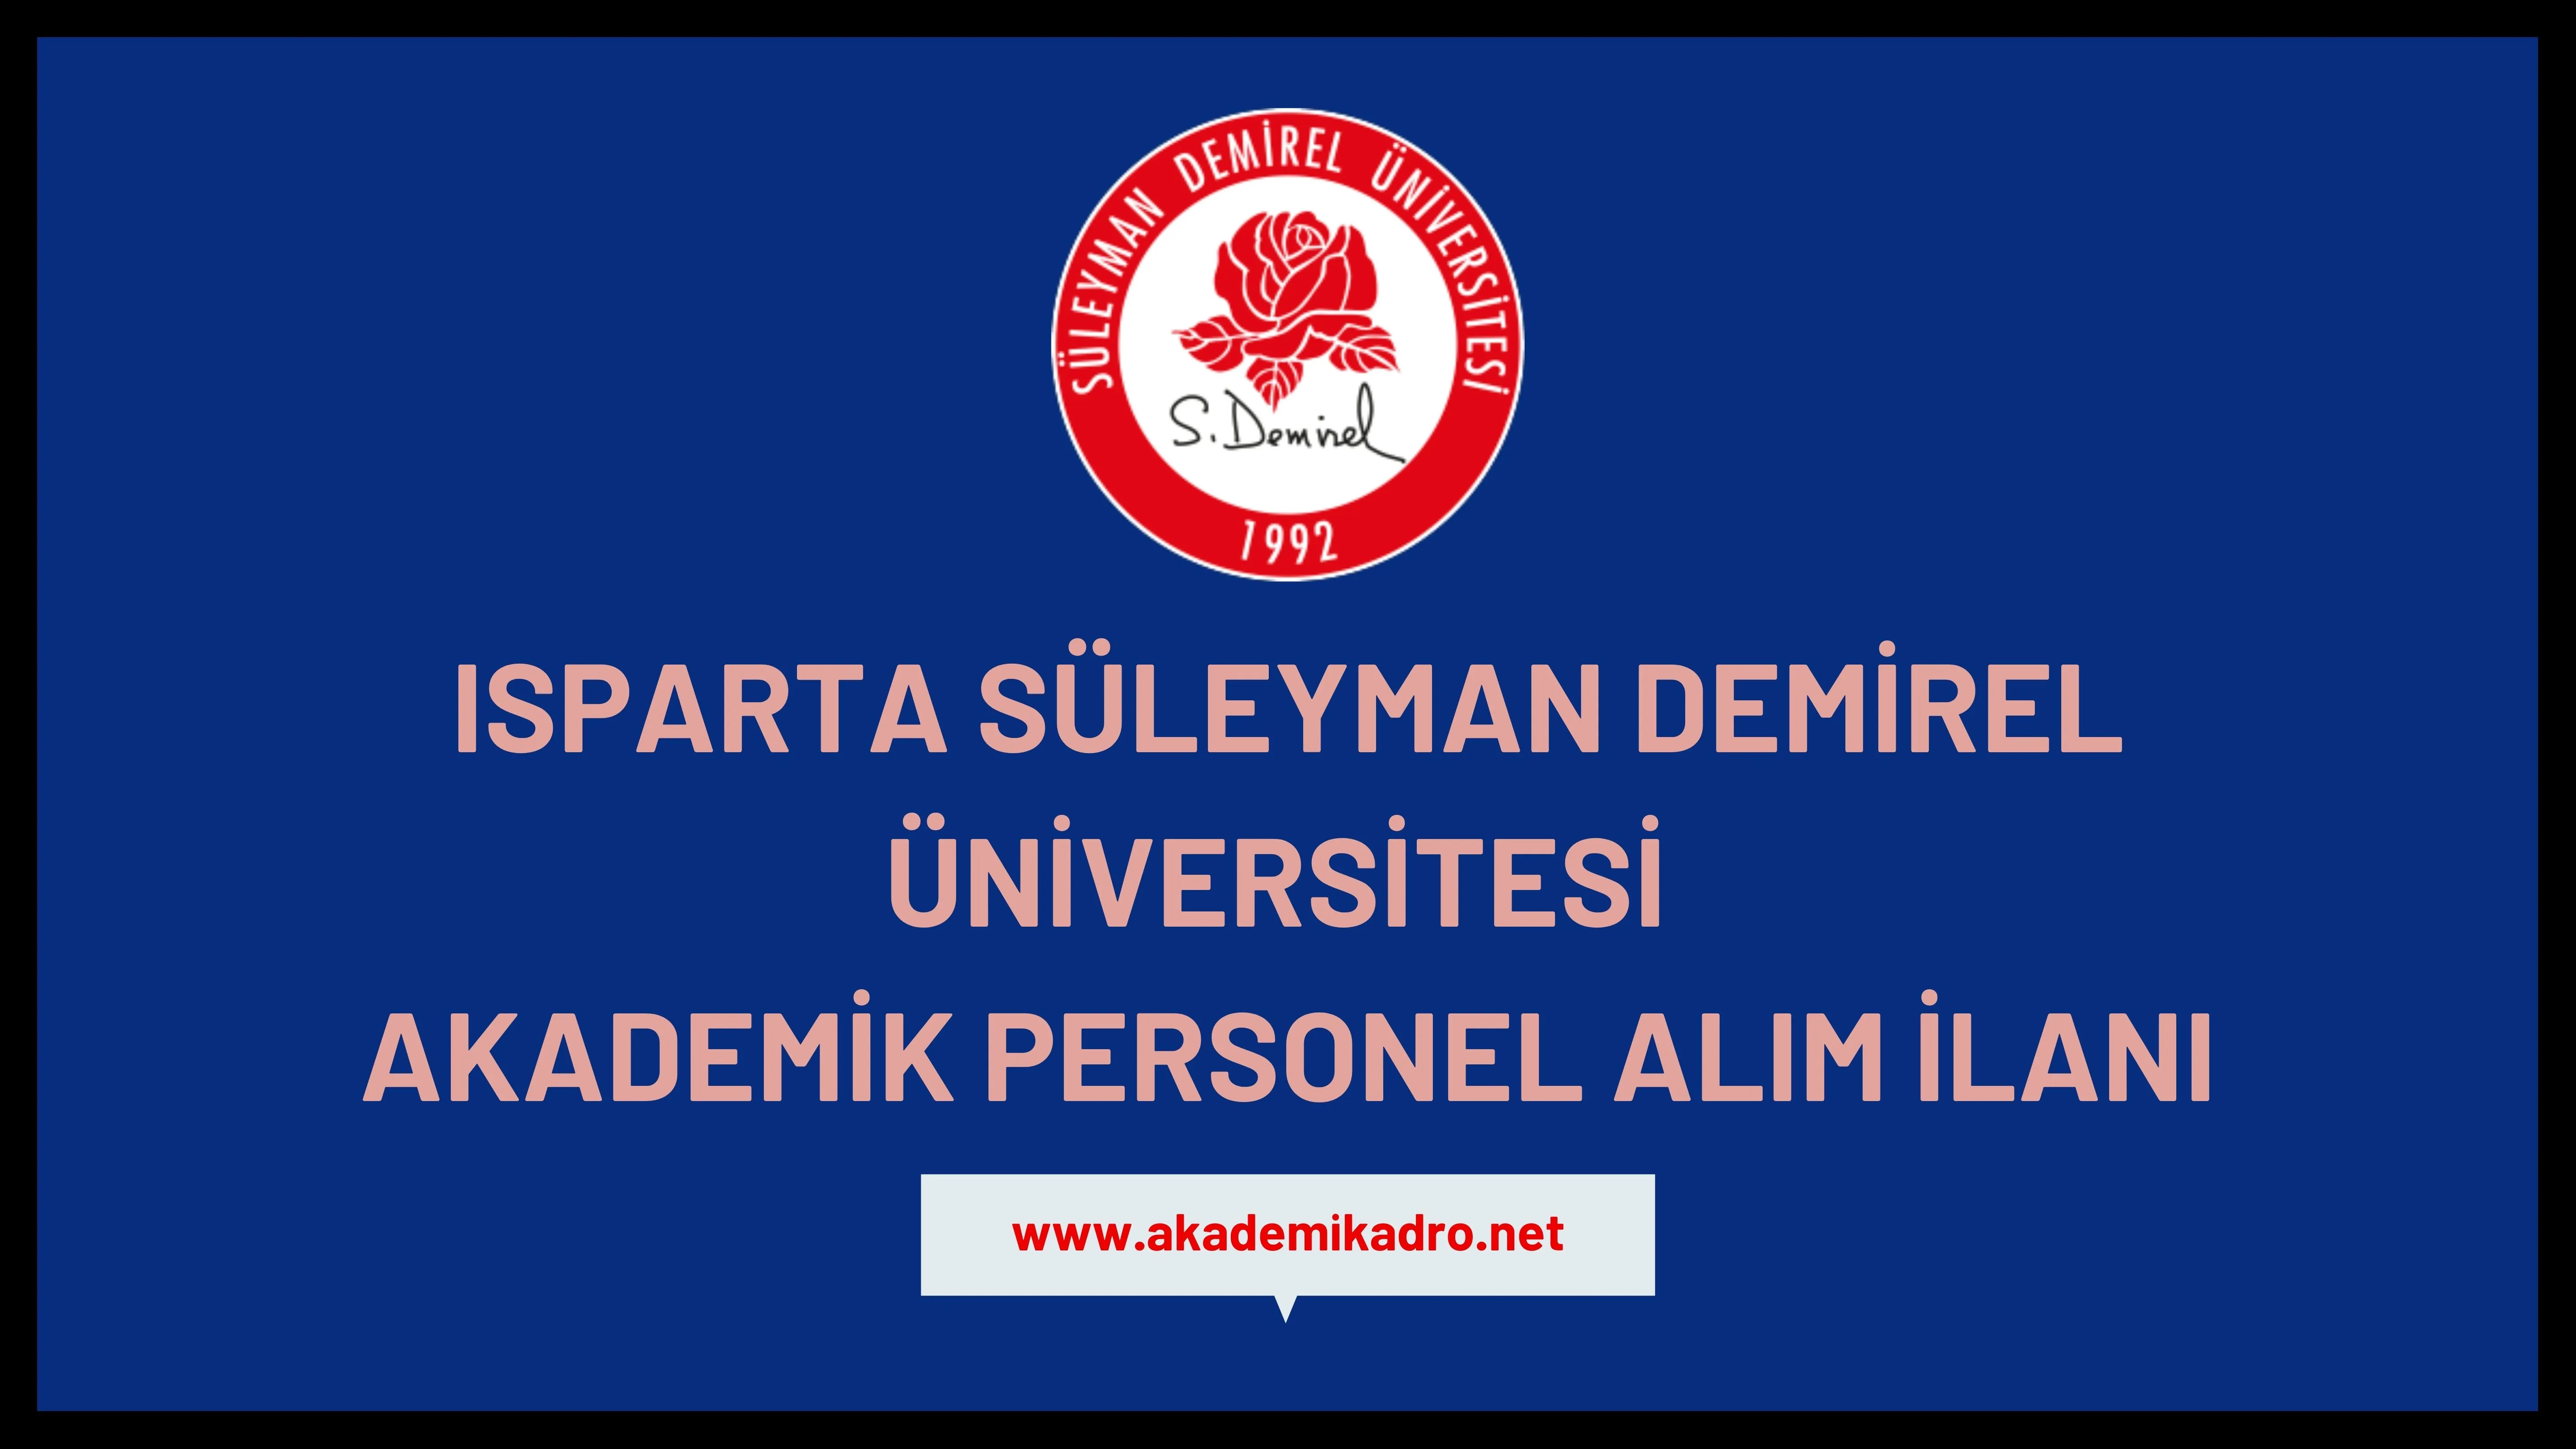 Süleyman Demirel Üniversitesi 29 akademik personel alacak